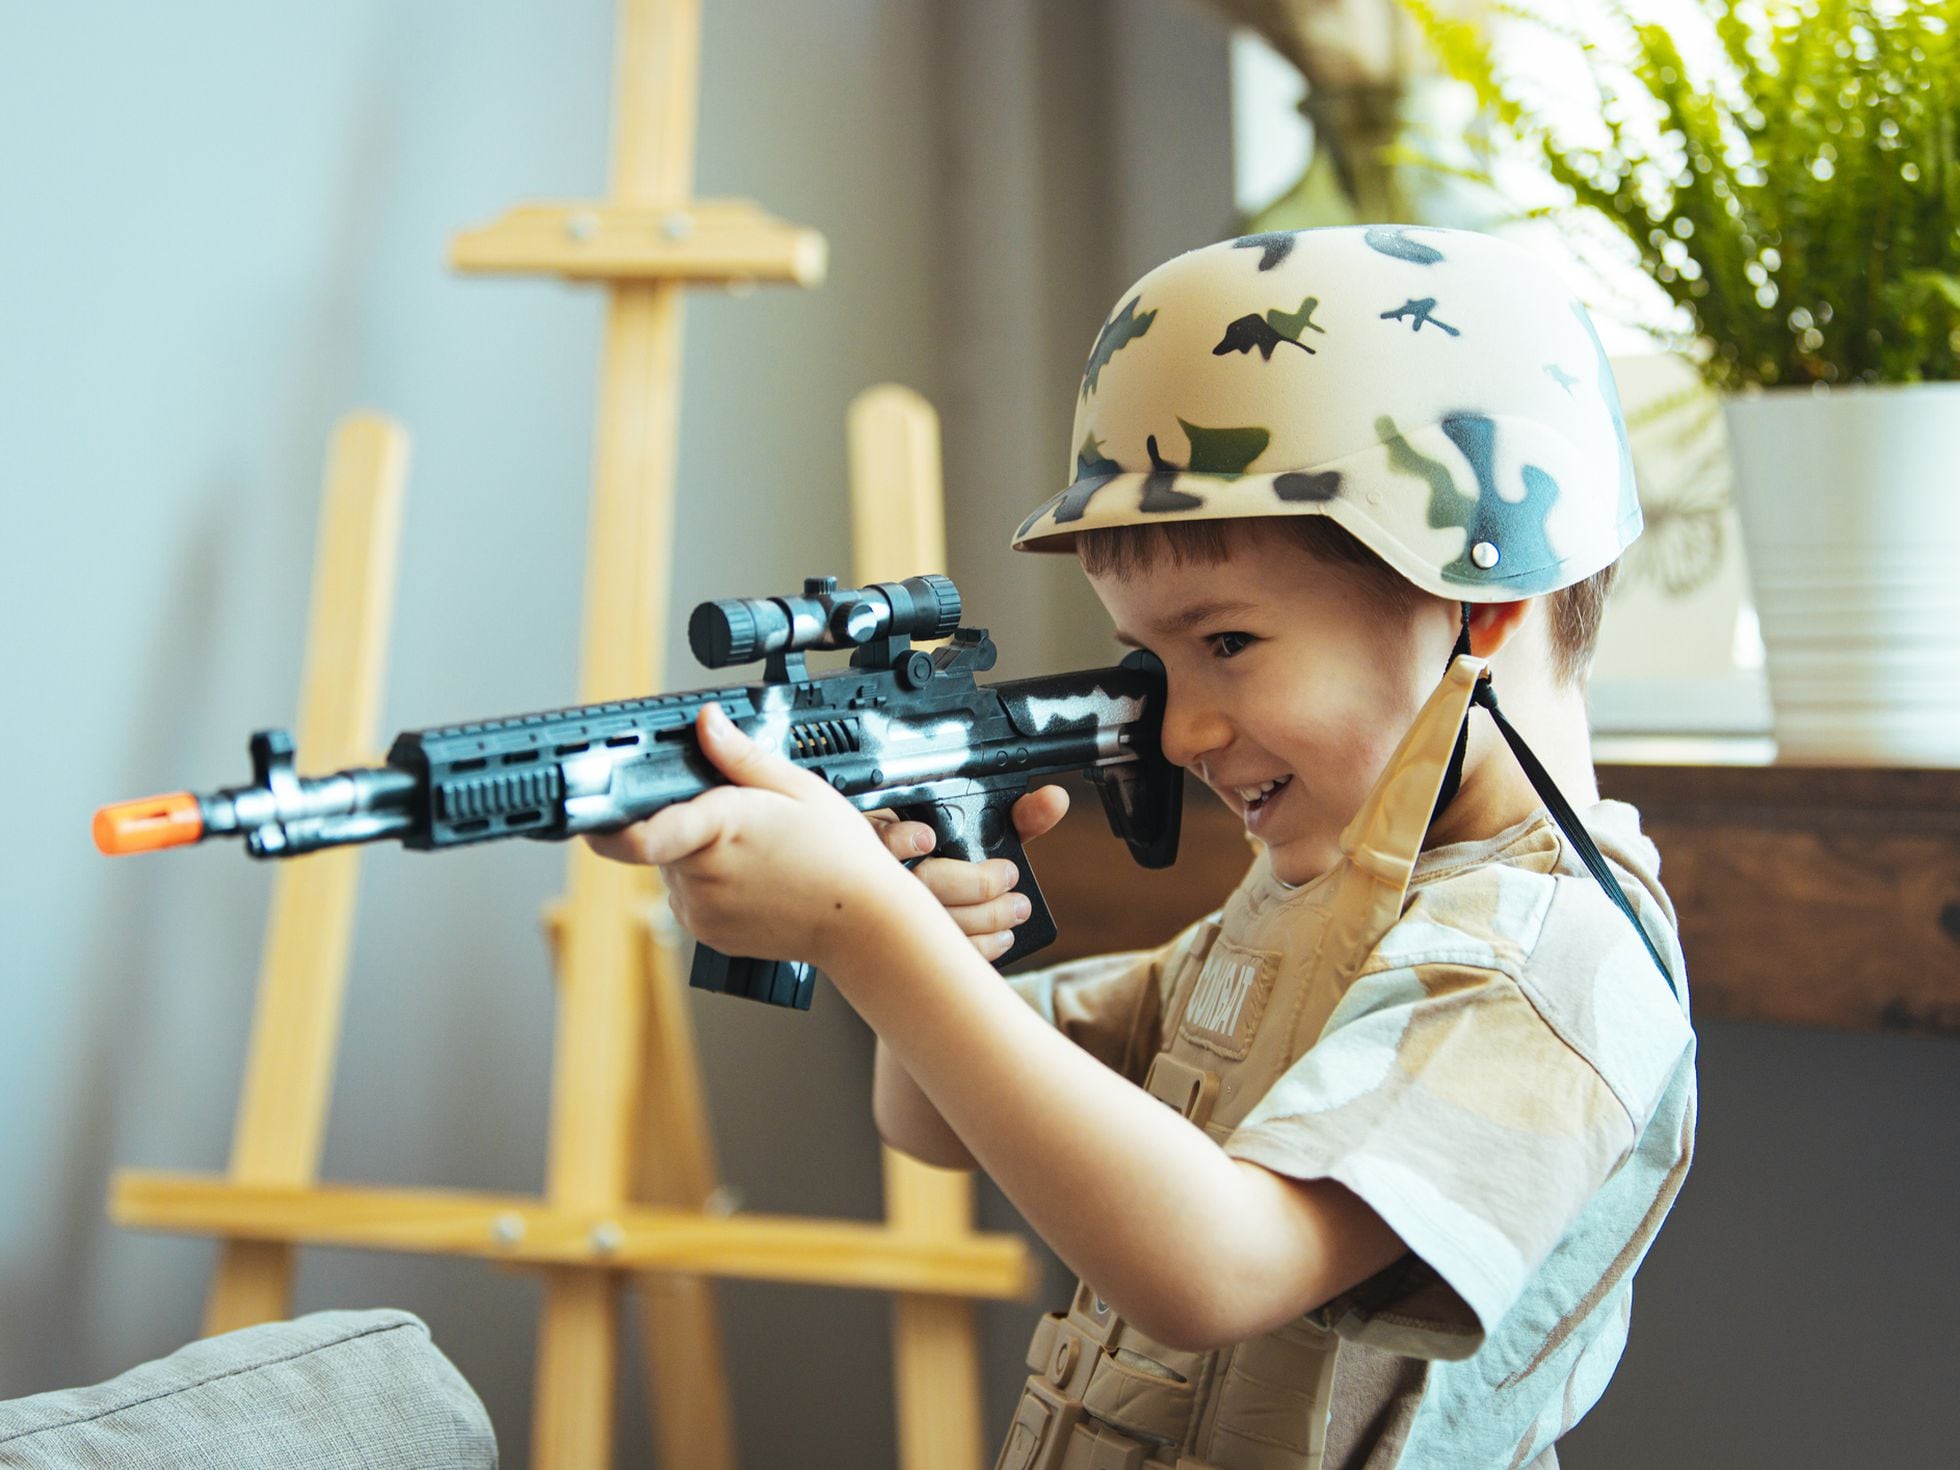 El debate armas de juguete niños: ¿son violentas o un juego simbólico? Mamas & Papas | EL PAÍS